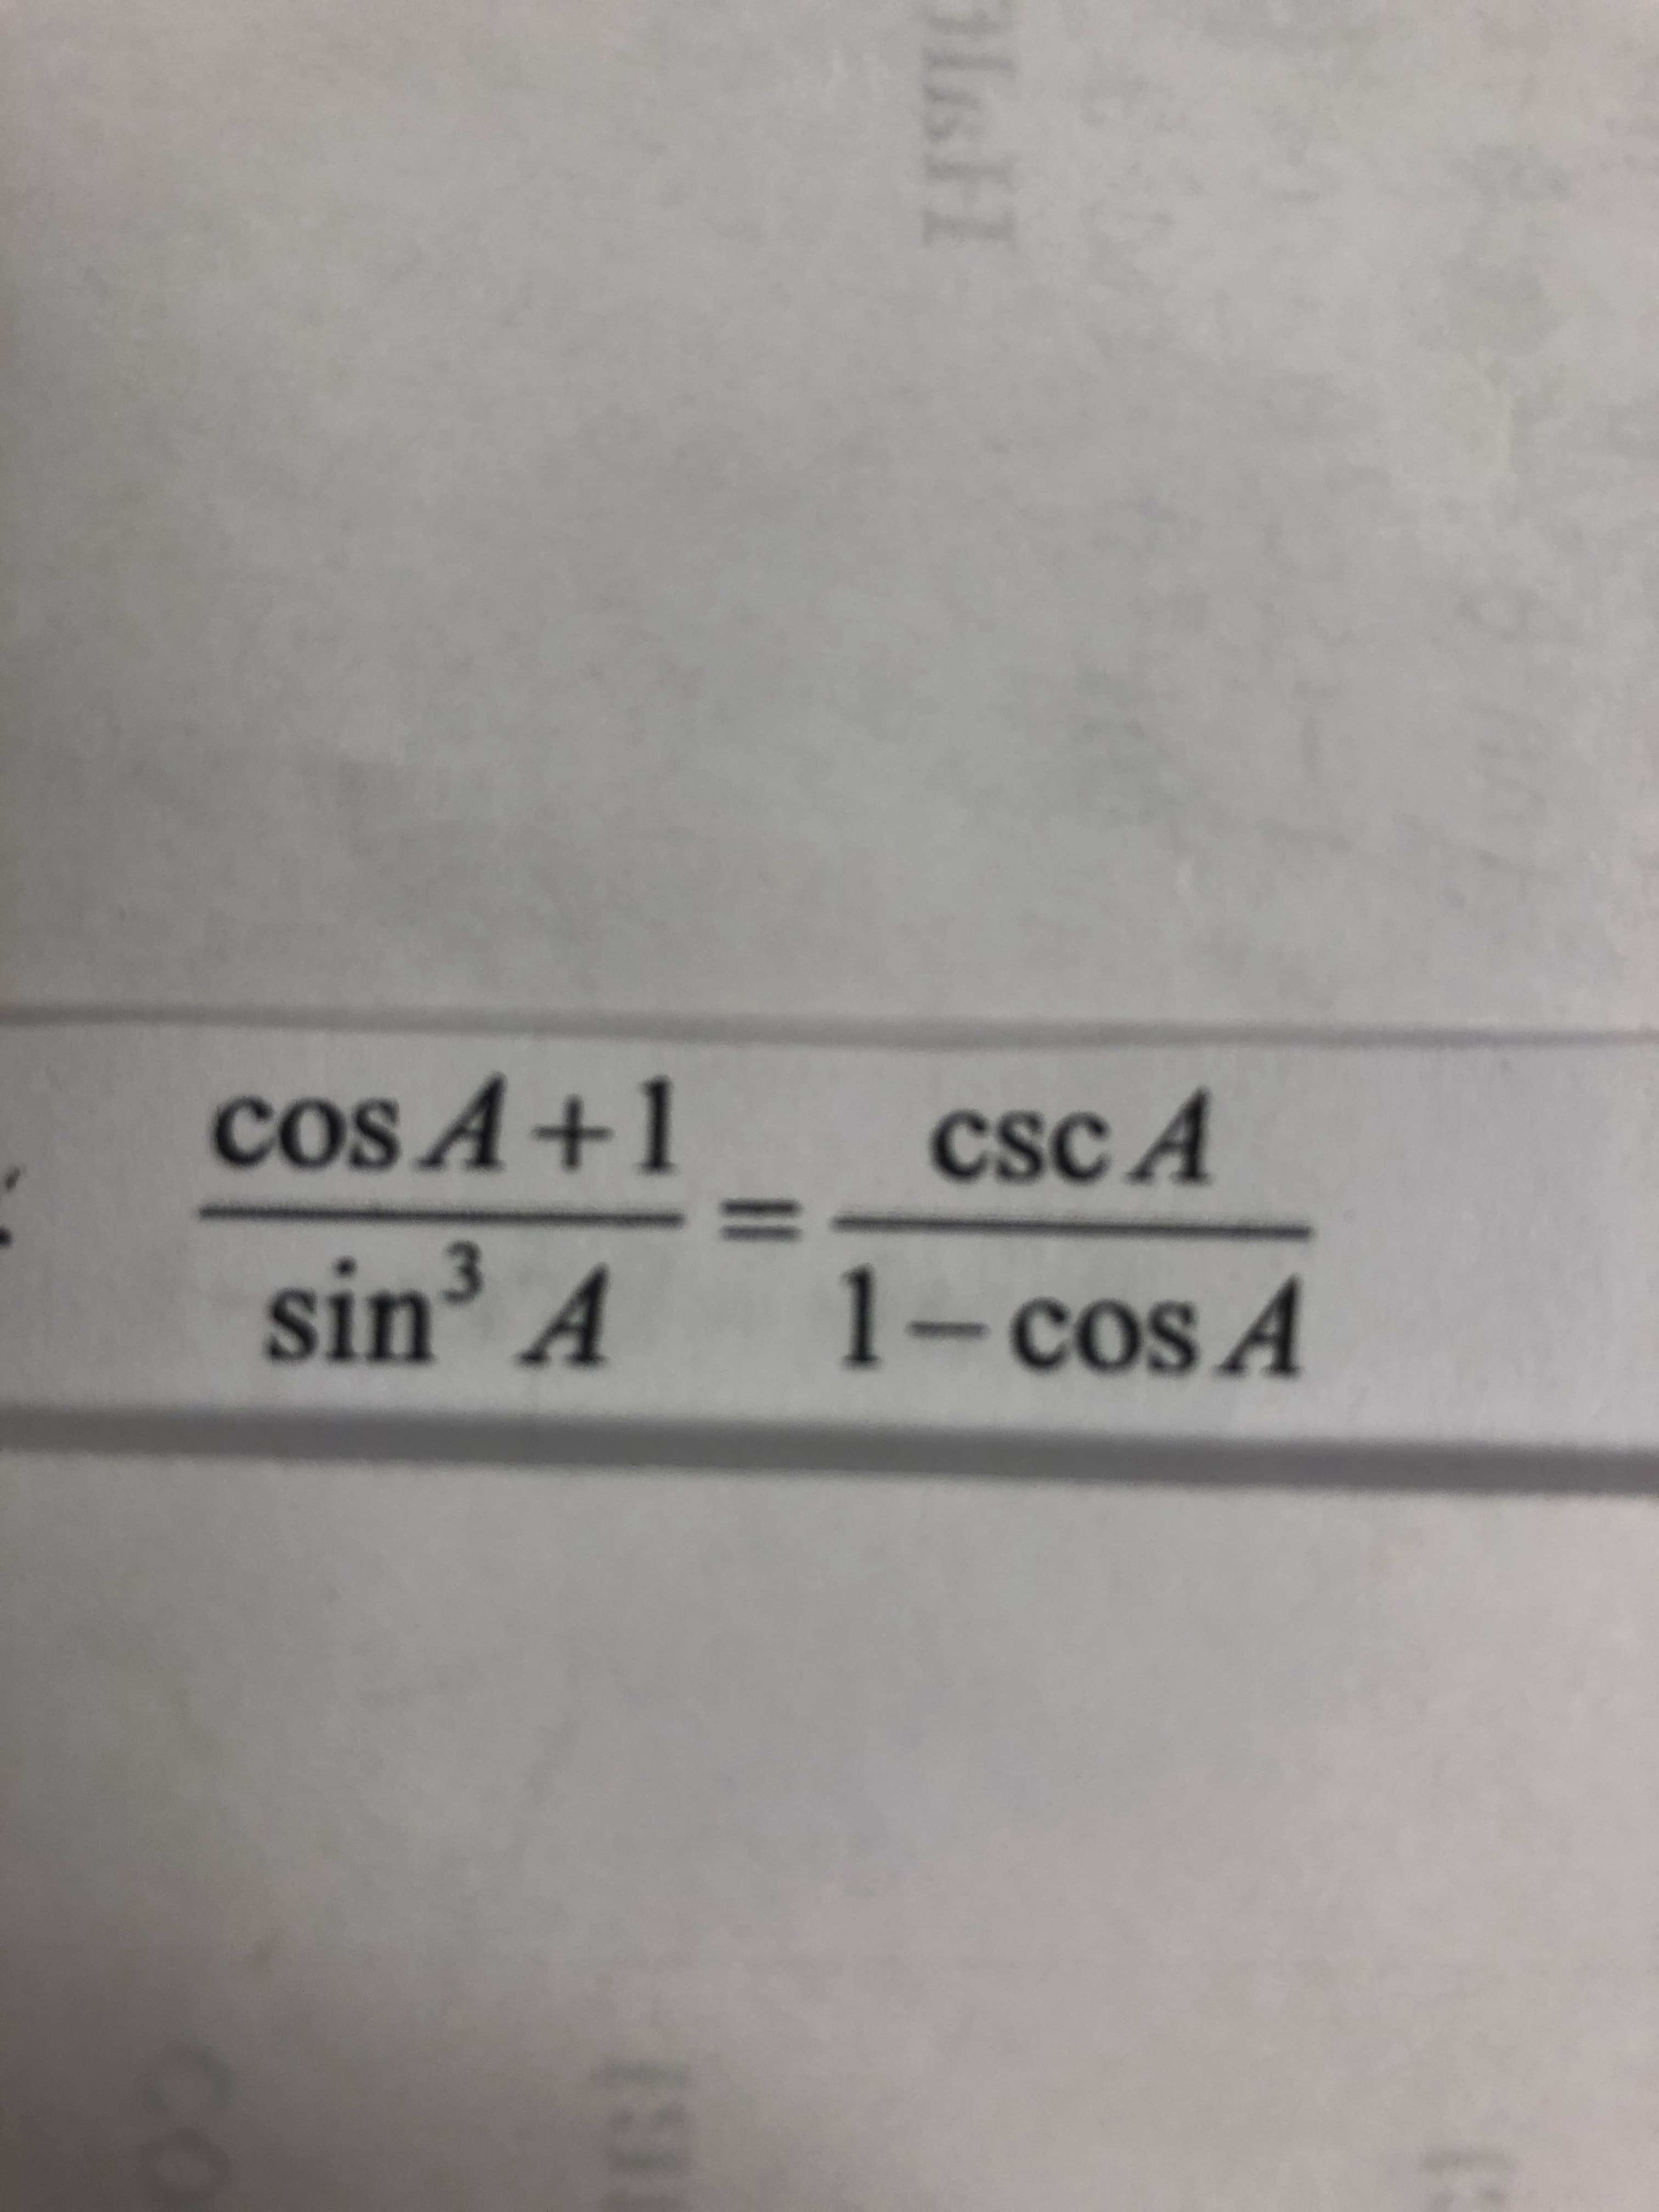 cos A+1
cSc A
%3D
sin' A
3
1-cos A
